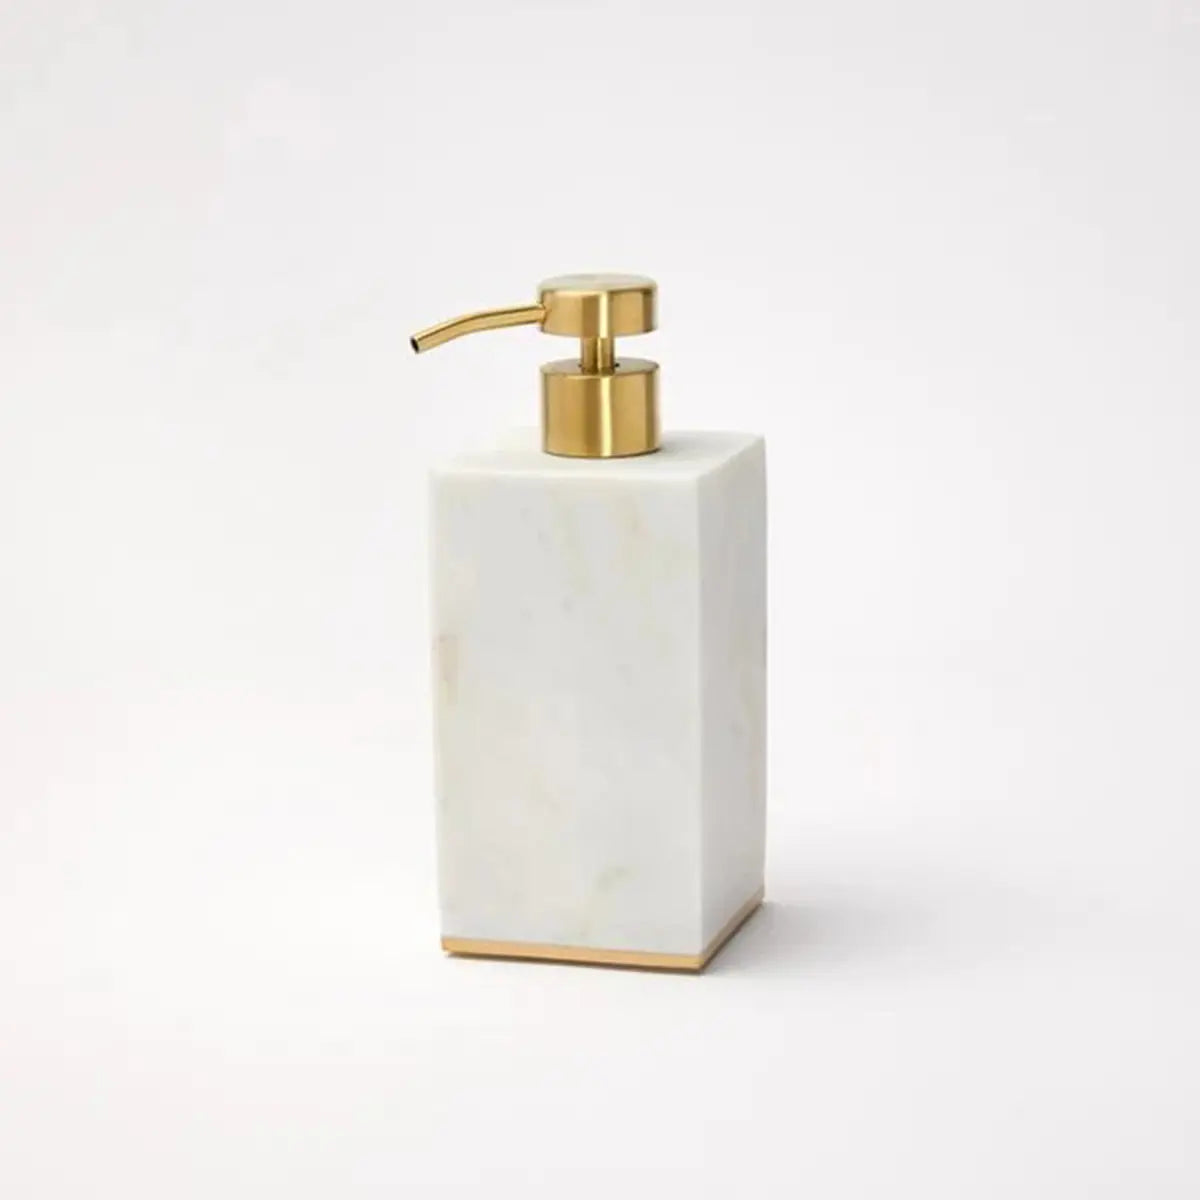 Sferra Pietra Marble Soap Dispenser in White, Gold